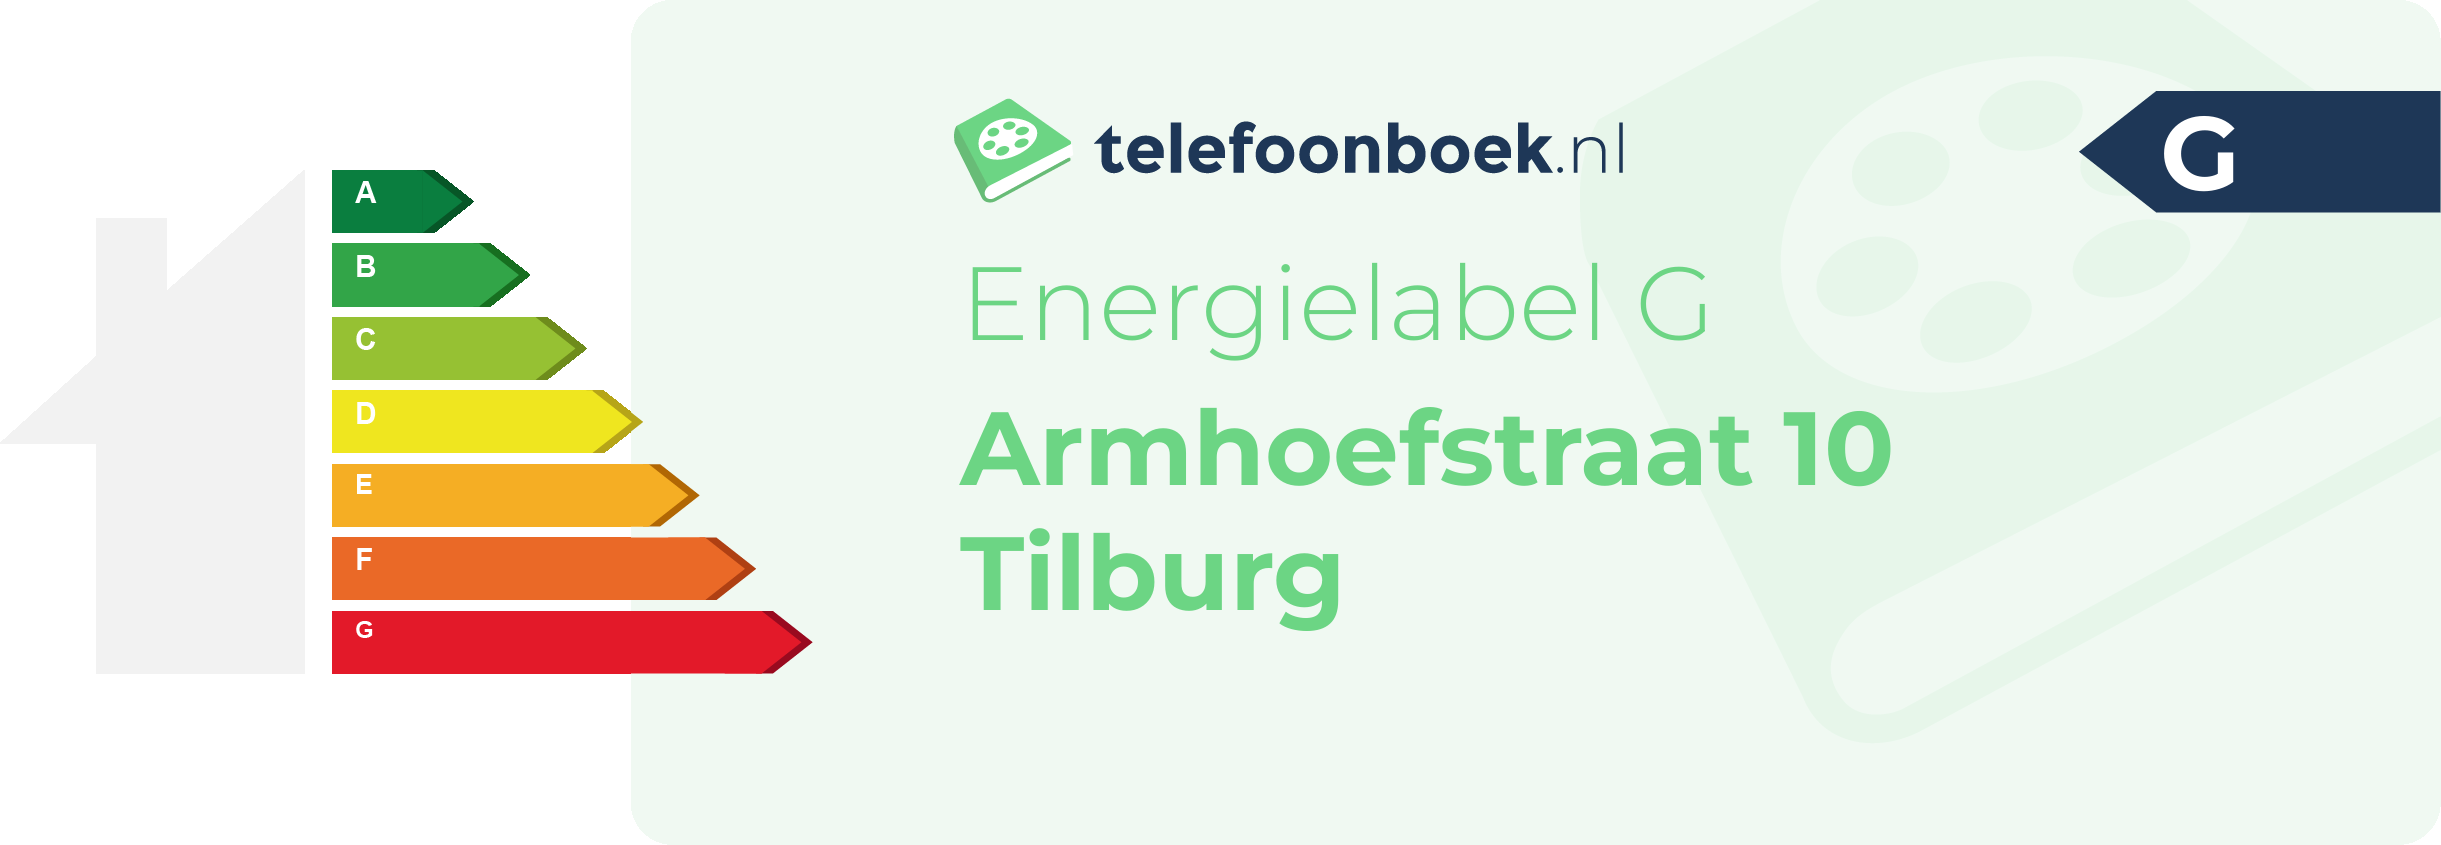 Energielabel Armhoefstraat 10 Tilburg